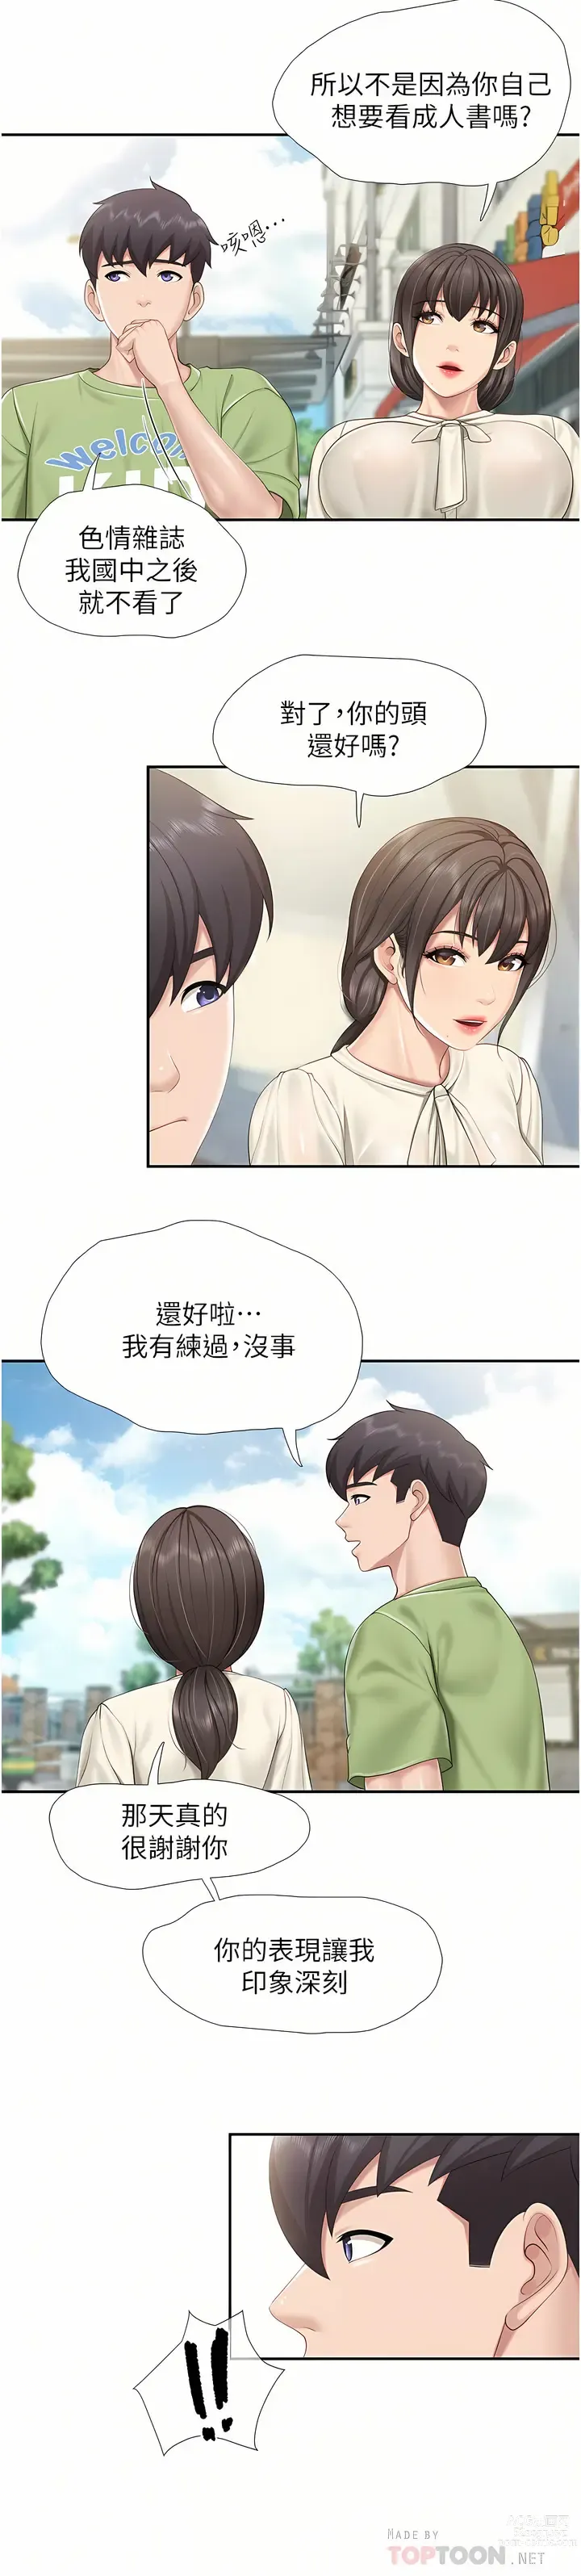 Page 9 of manga 亲子餐厅的妈妈们 51-103